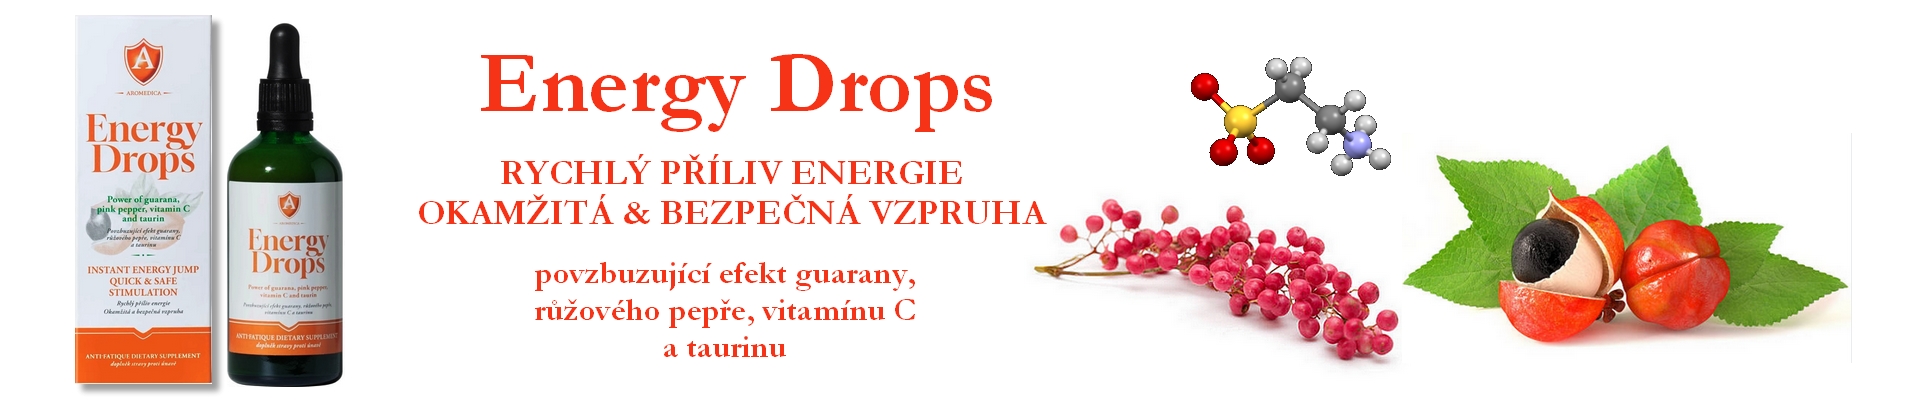 energy drops